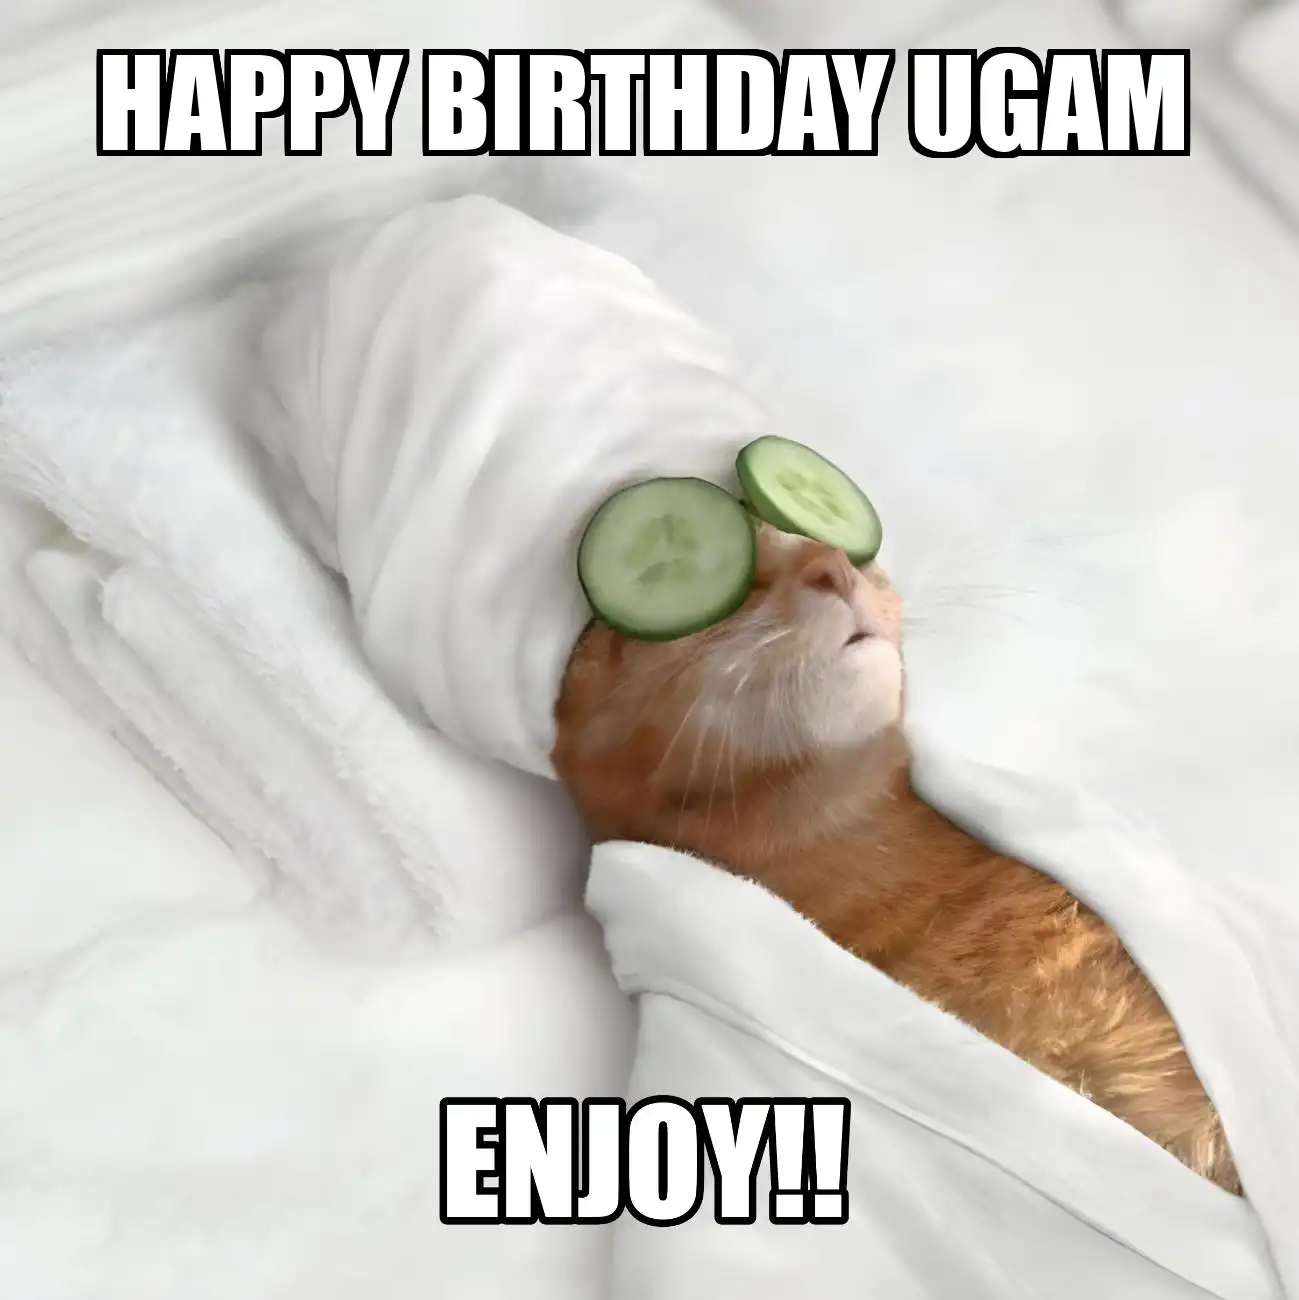 Happy Birthday Ugam Enjoy Cat Meme